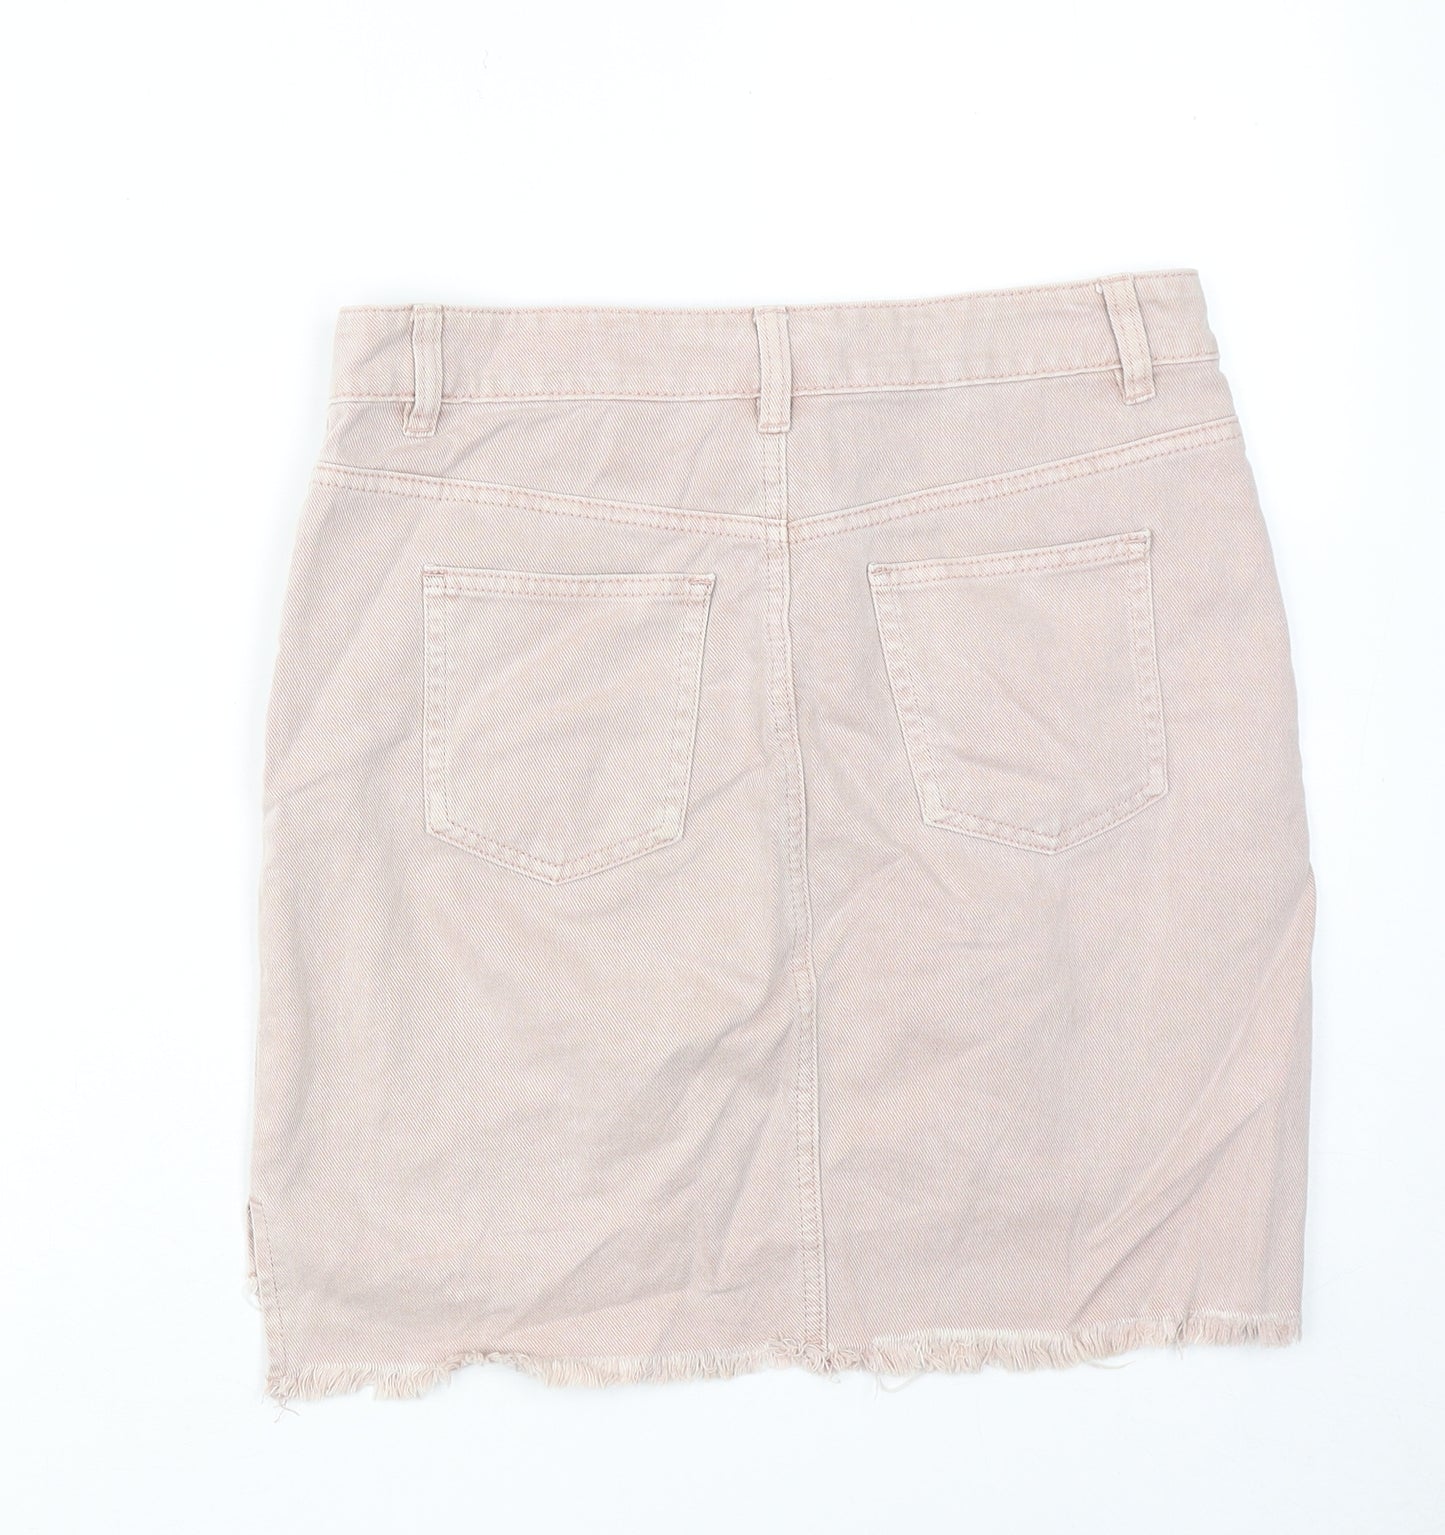 NEXT Womens Pink Cotton A-Line Skirt Size 8 Zip